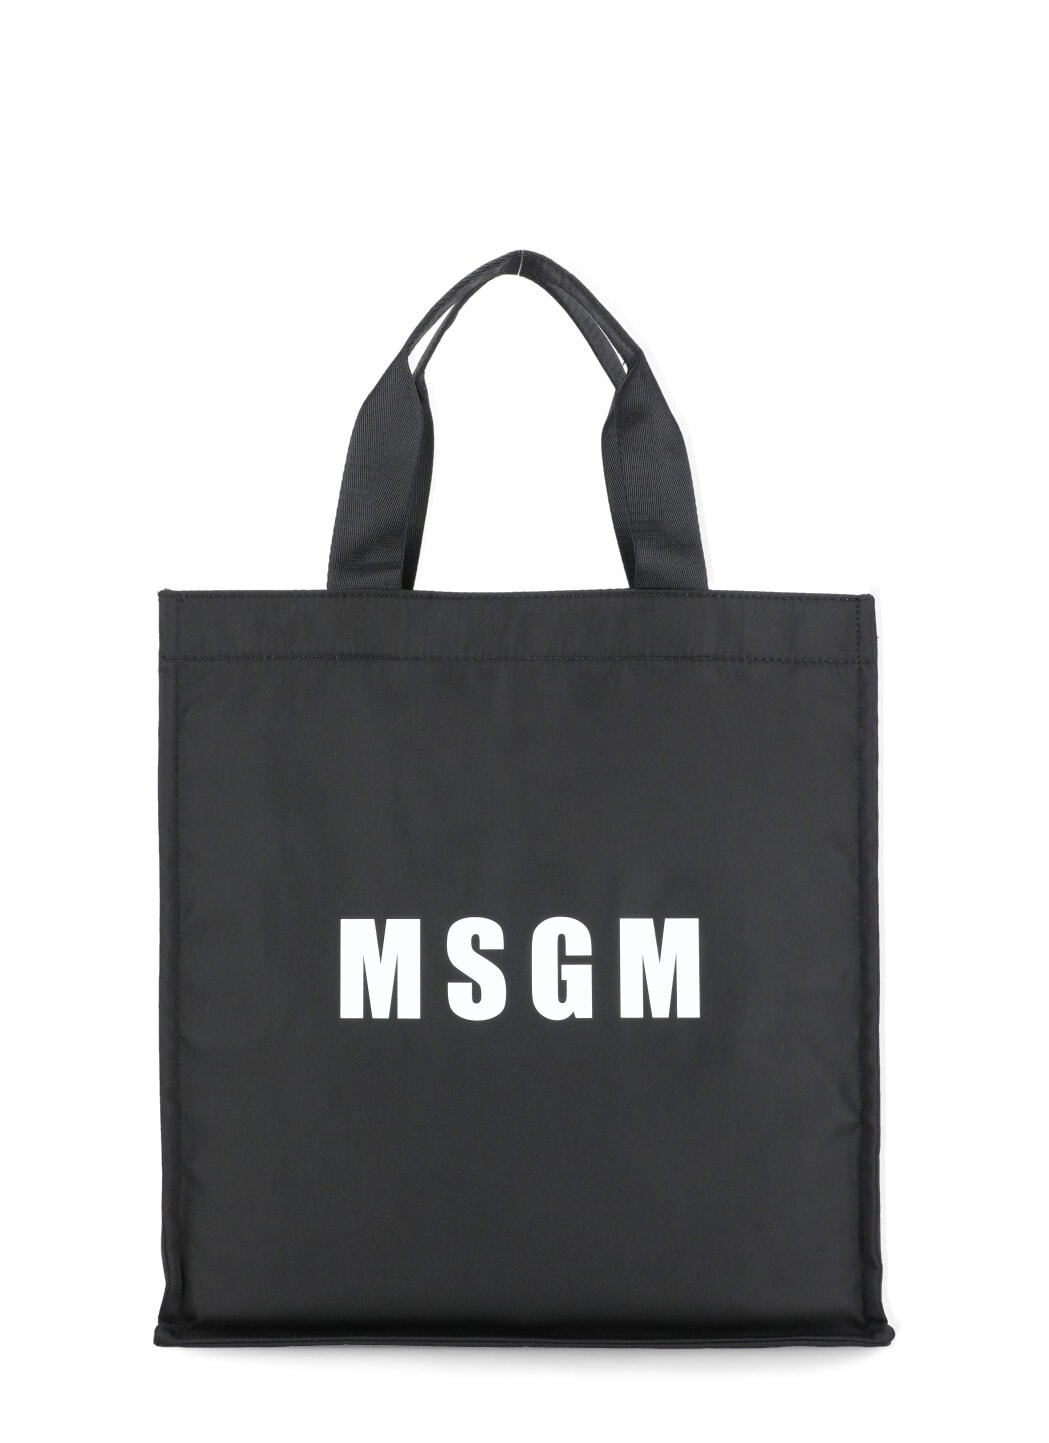 MSGM TOTE SHOULDER BAG